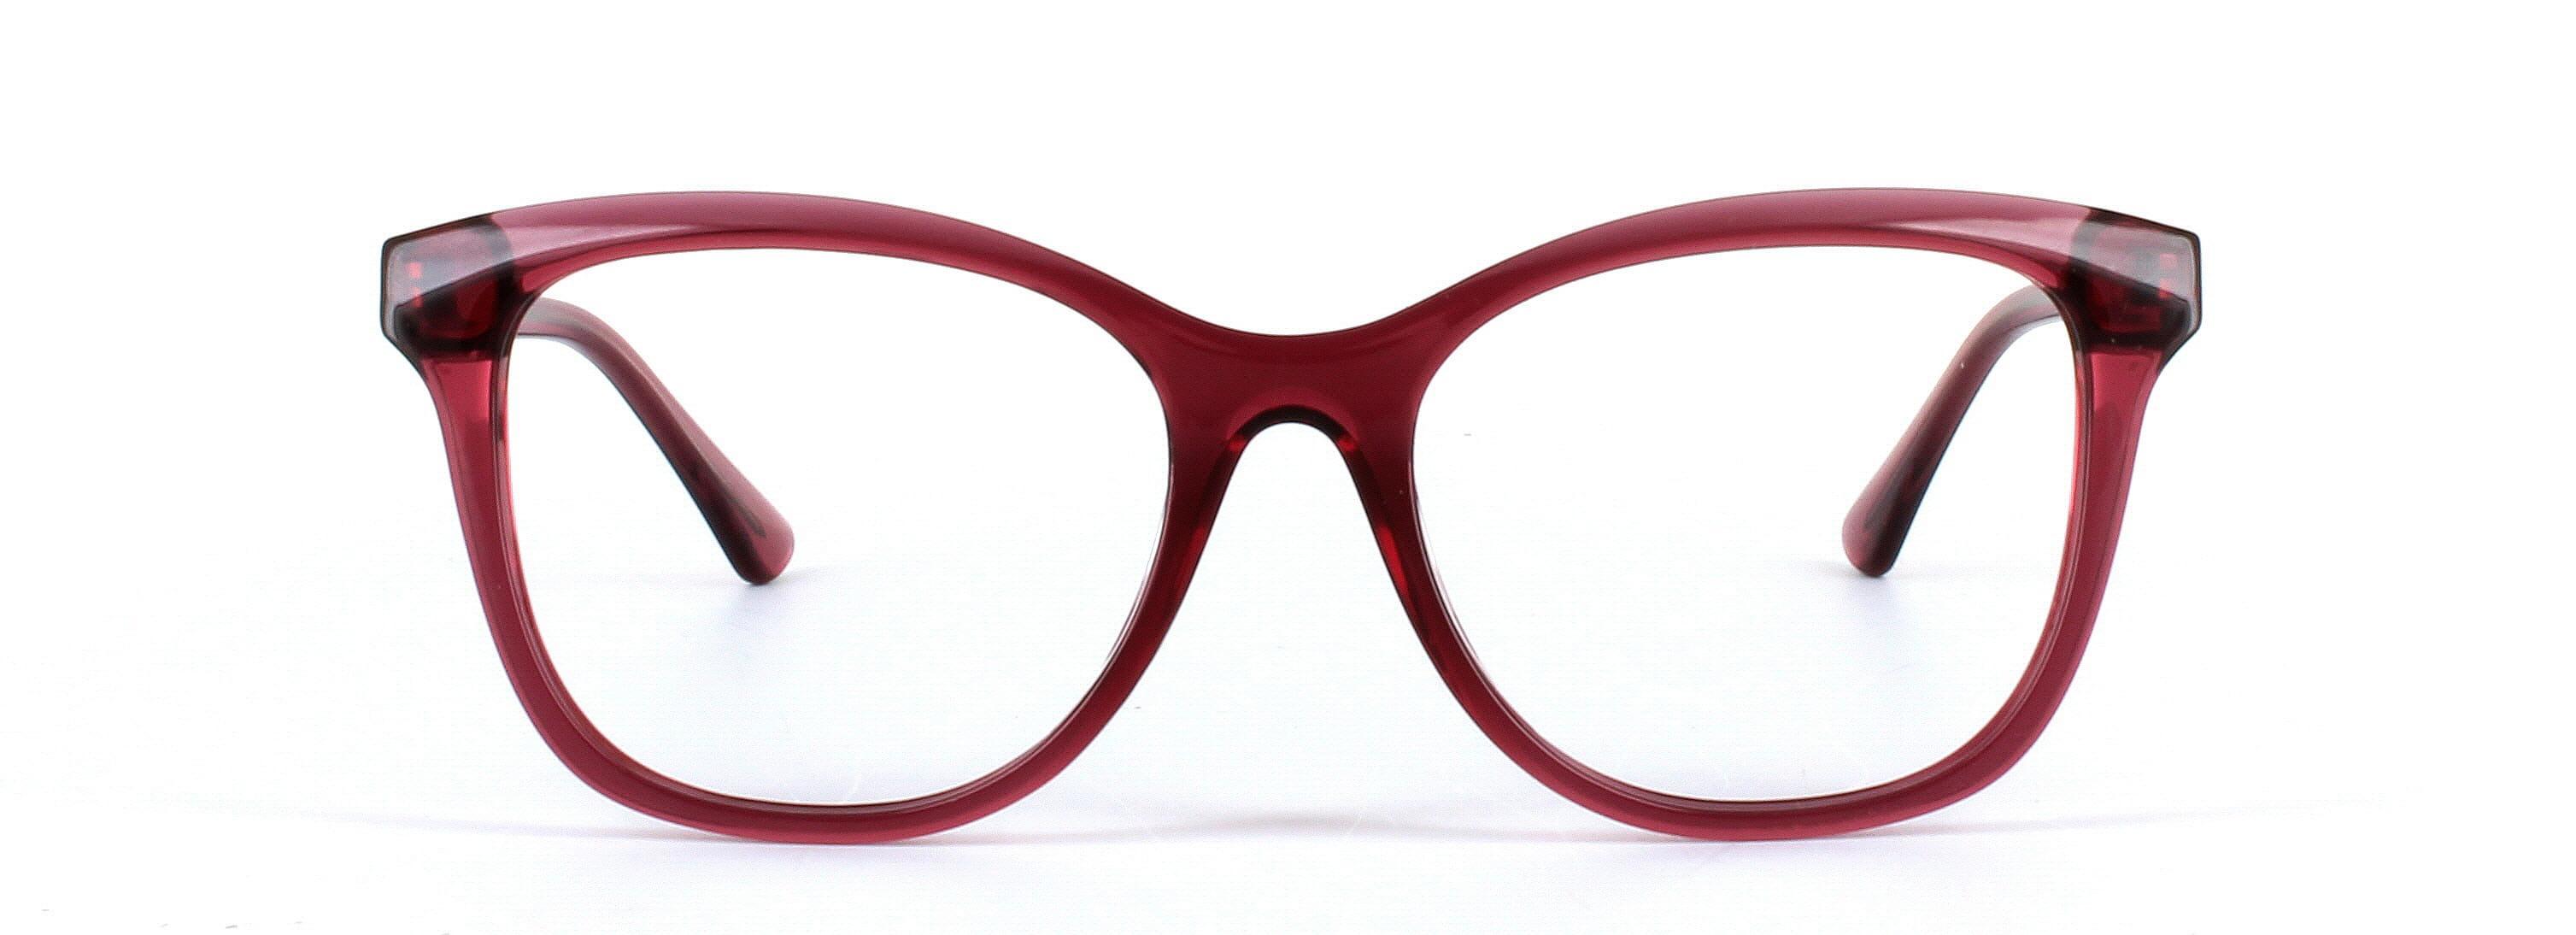 Kelsey Burgundy Full Rim Round Plastic Glasses - Image View 5